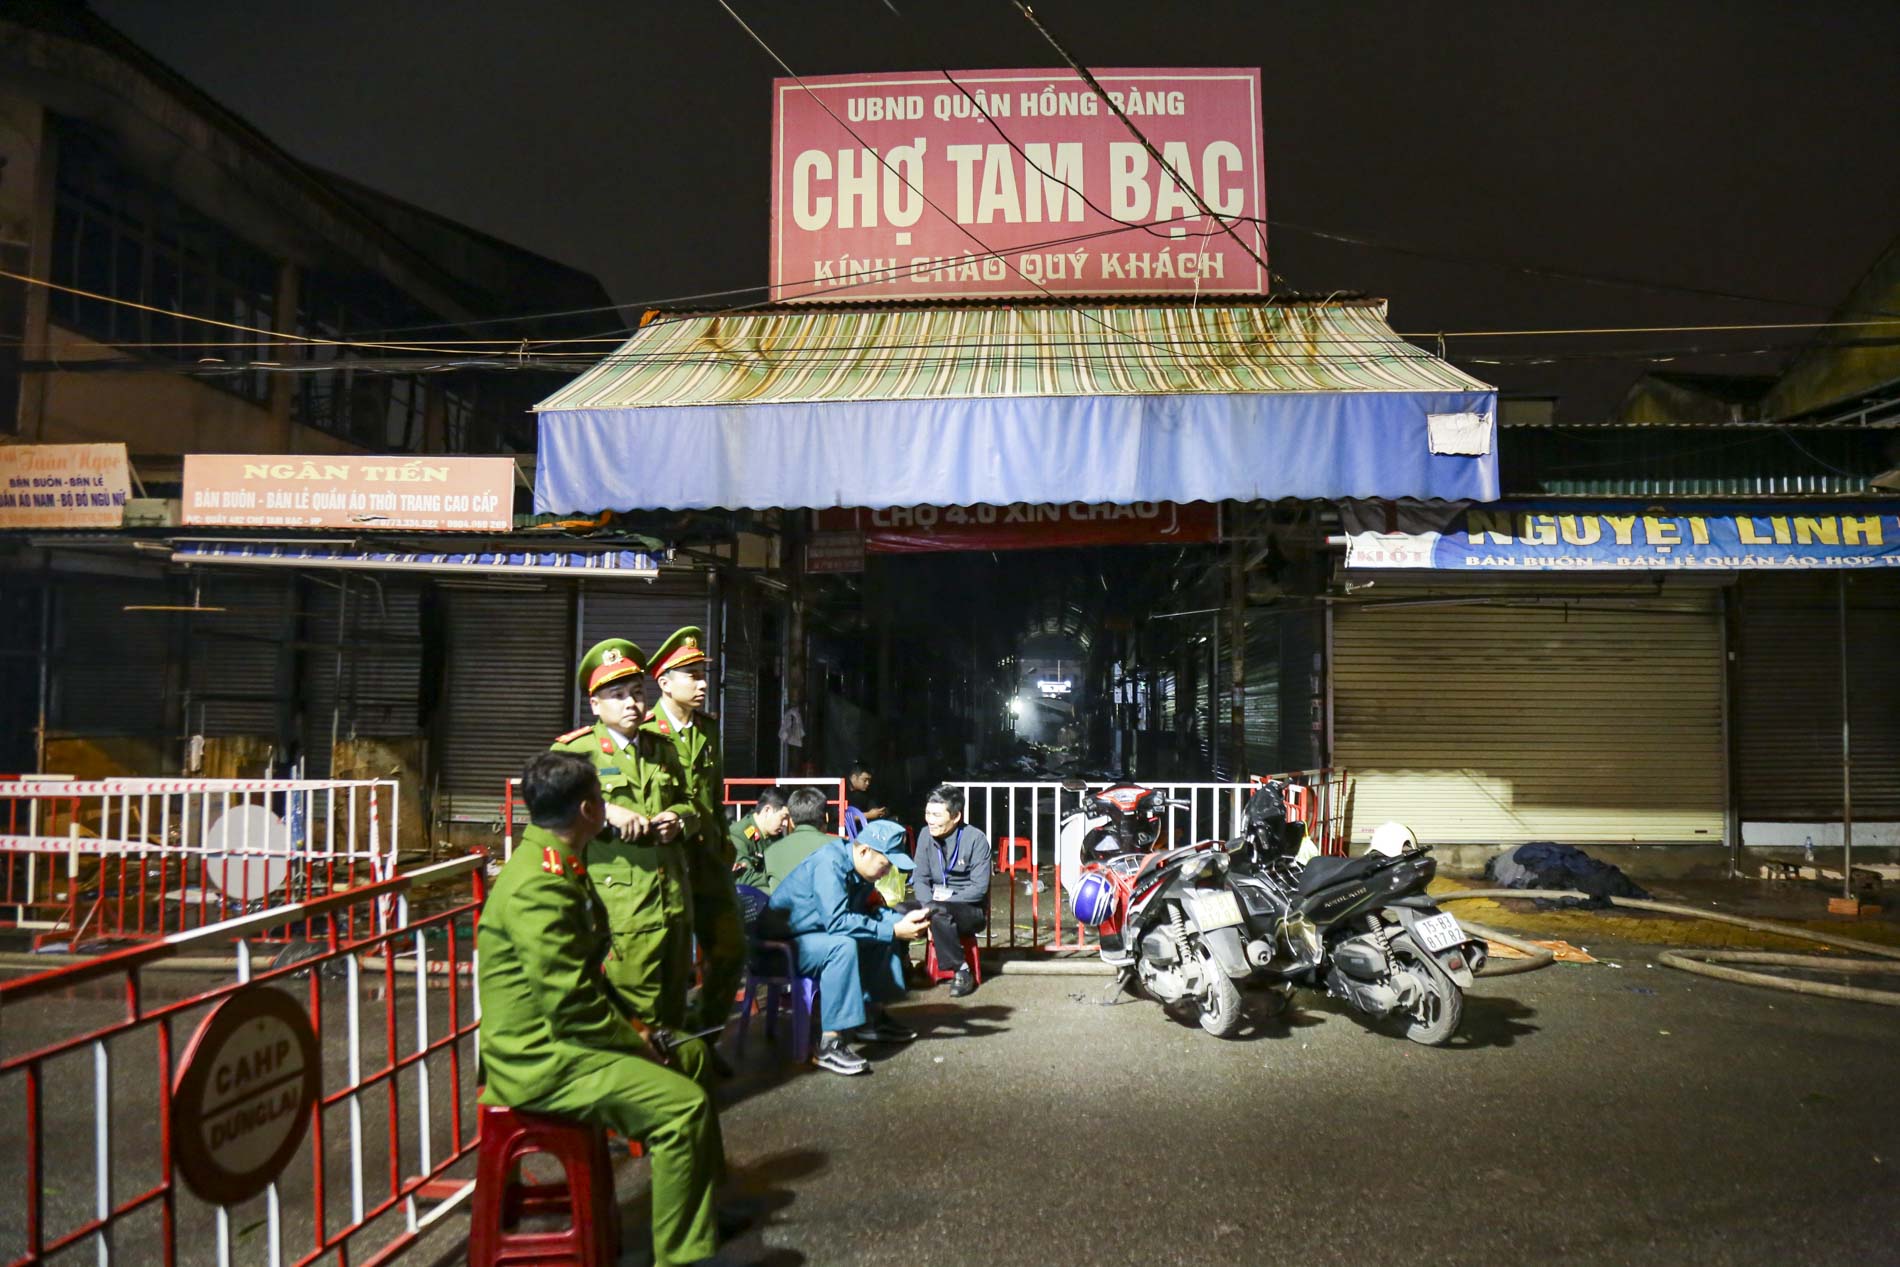 Ảnh: Xuyên đêm bảo vệ hiện trường, chống “lửa tái phát” tại chợ Tam Bạc lớn nhất Hải Phòng - Ảnh 4.